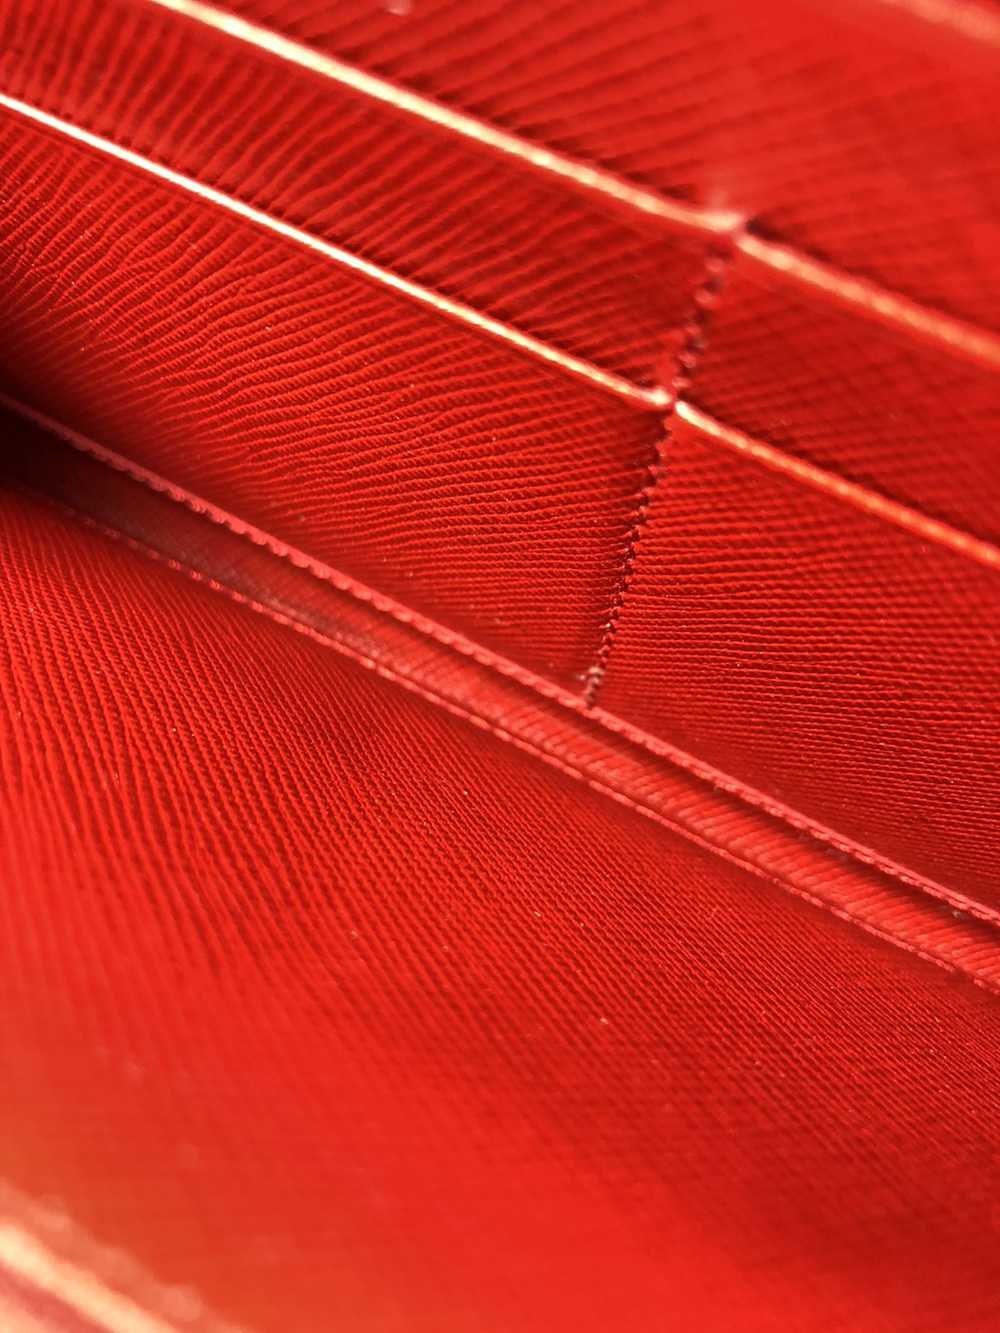 Prada Prada tessuto red nylon zippy wallet - image 5